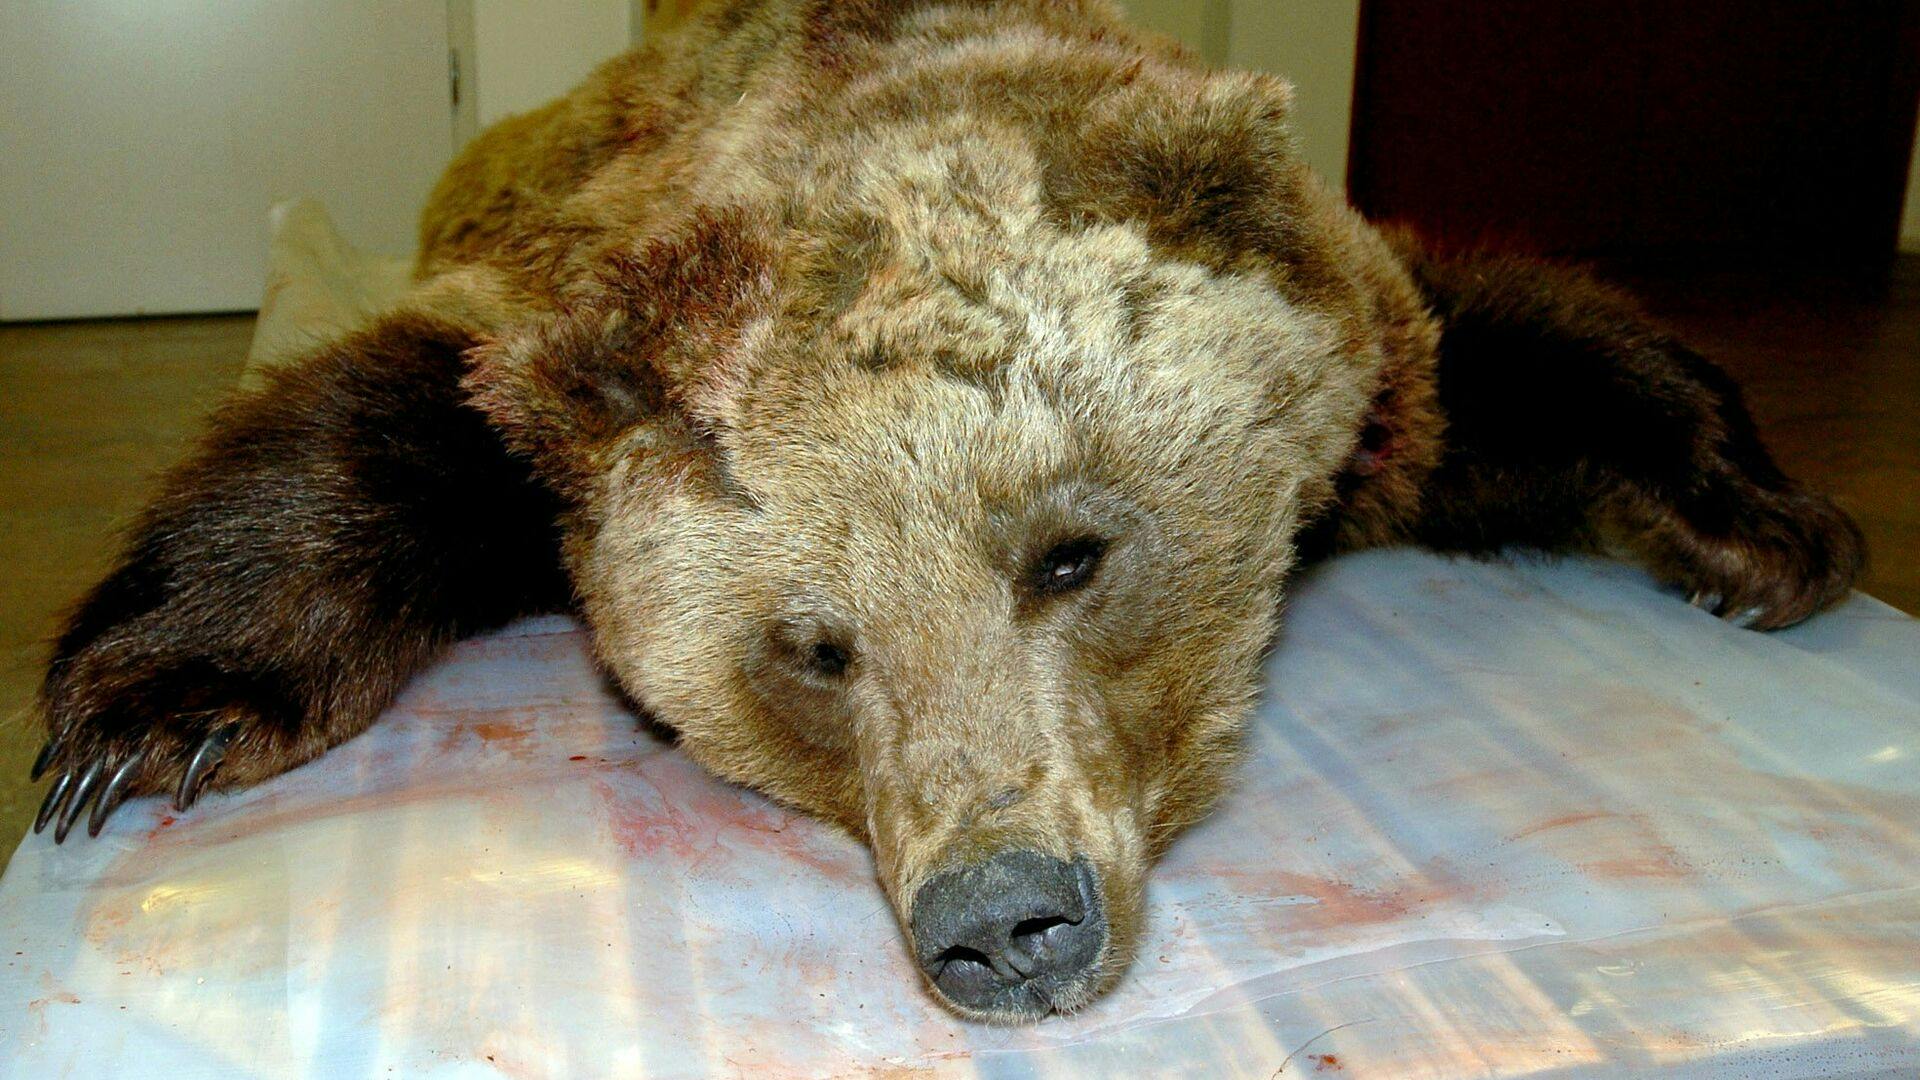 Det er heldigvis meget sjældent, at en bjørn dræber mennesker i Sverige. Men i 2004 skete det. Hunbjørnen blev dræbt og var den første i dengang 106 år, som havde dræbt et menneske i landet.